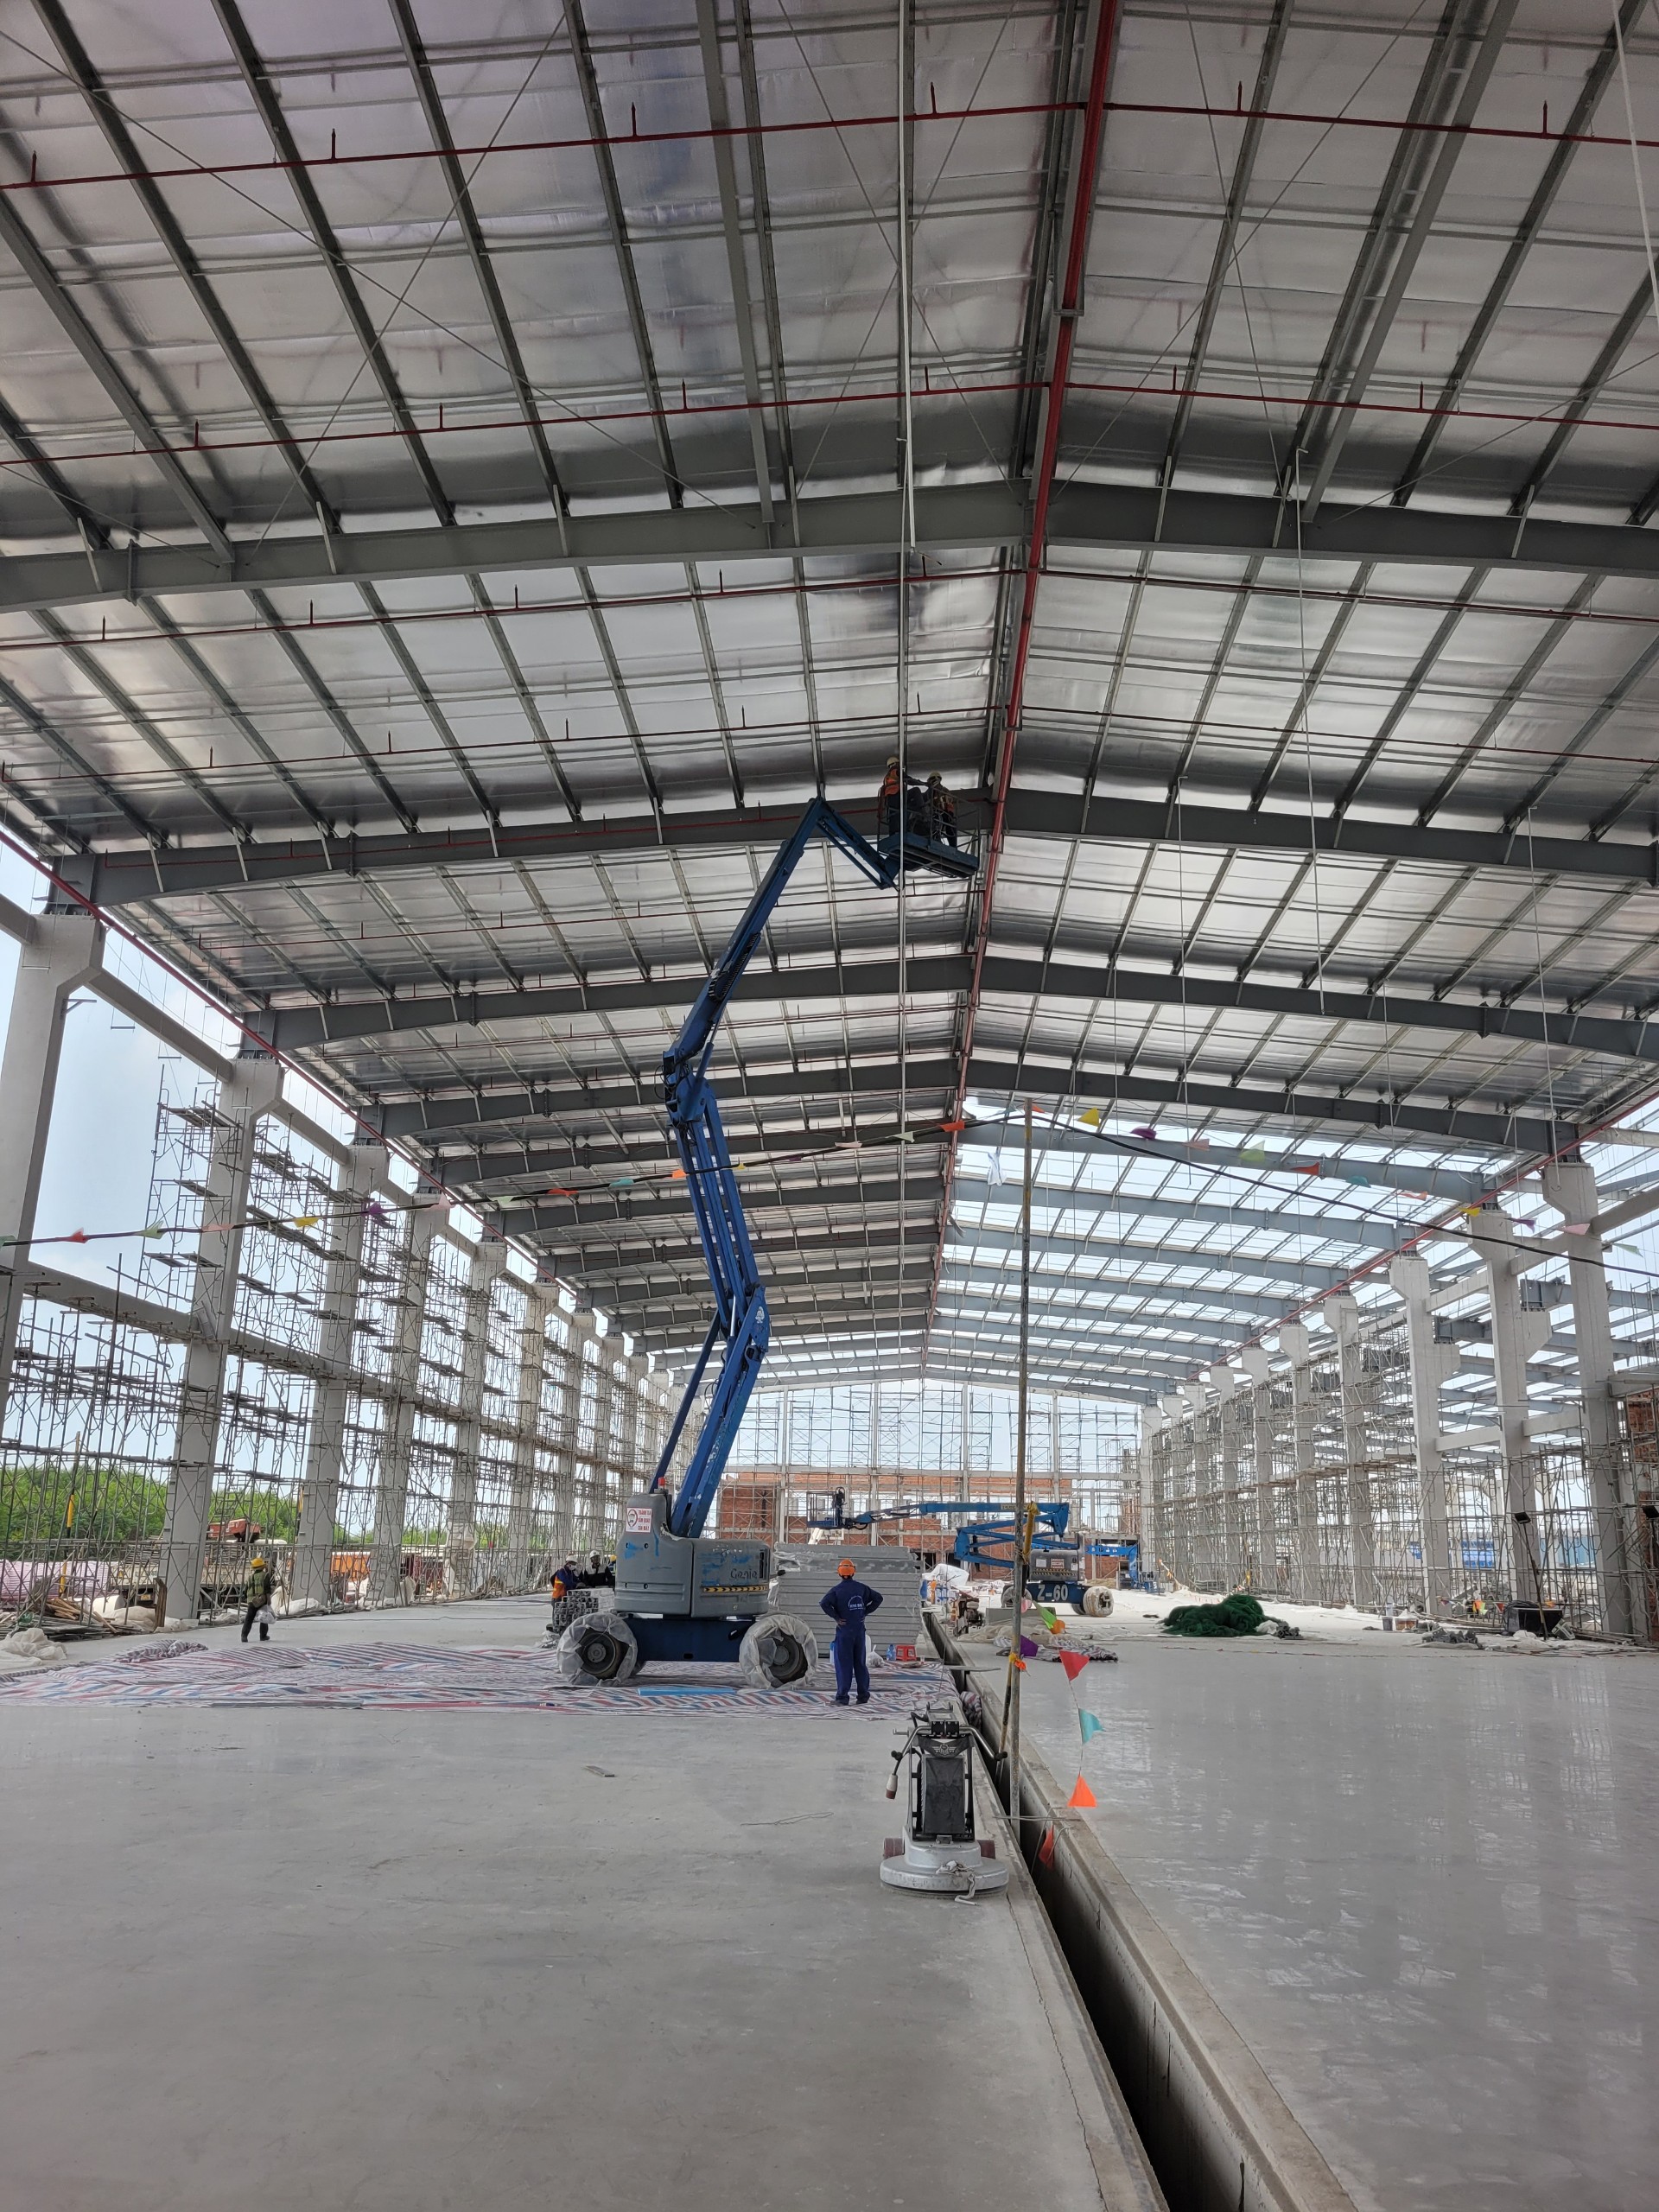 Cho thuê xe boom lift tại KCX và công nghiệp Linh Trung 3 Tây Ninh